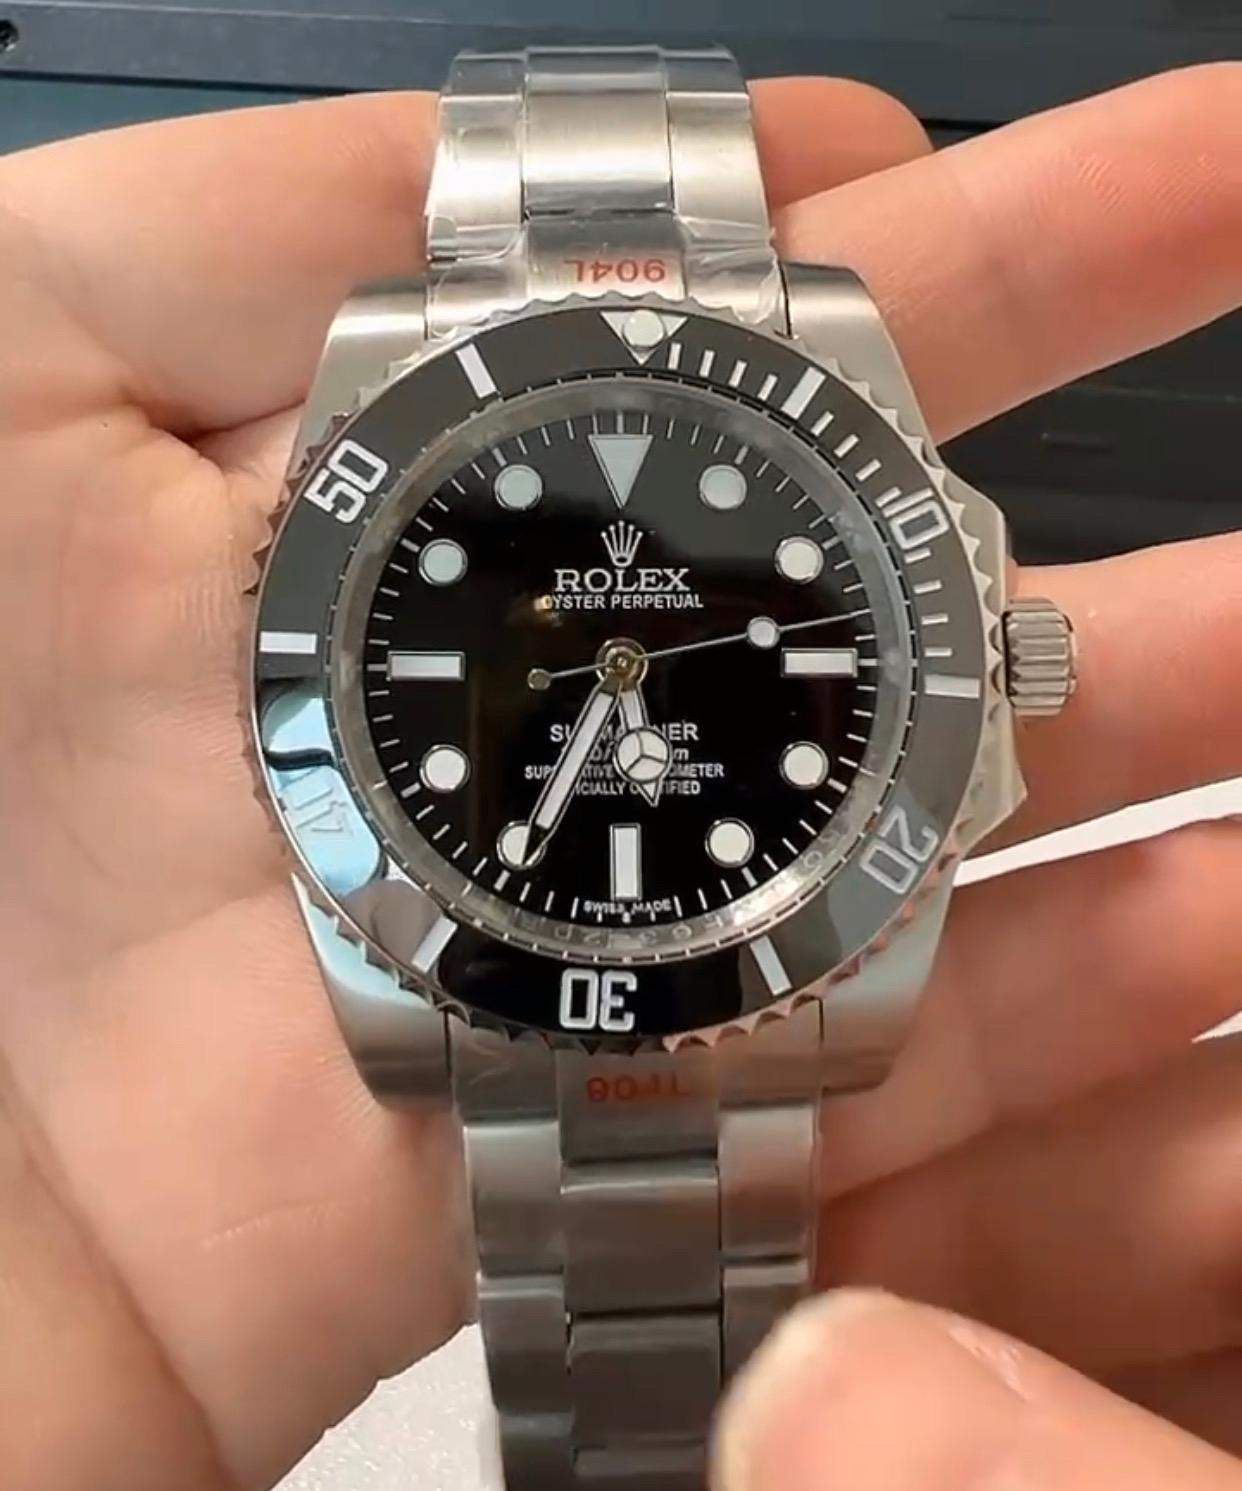 Sieht Diese Rolex Echt Aus Uhr Armbanduhr Luxus